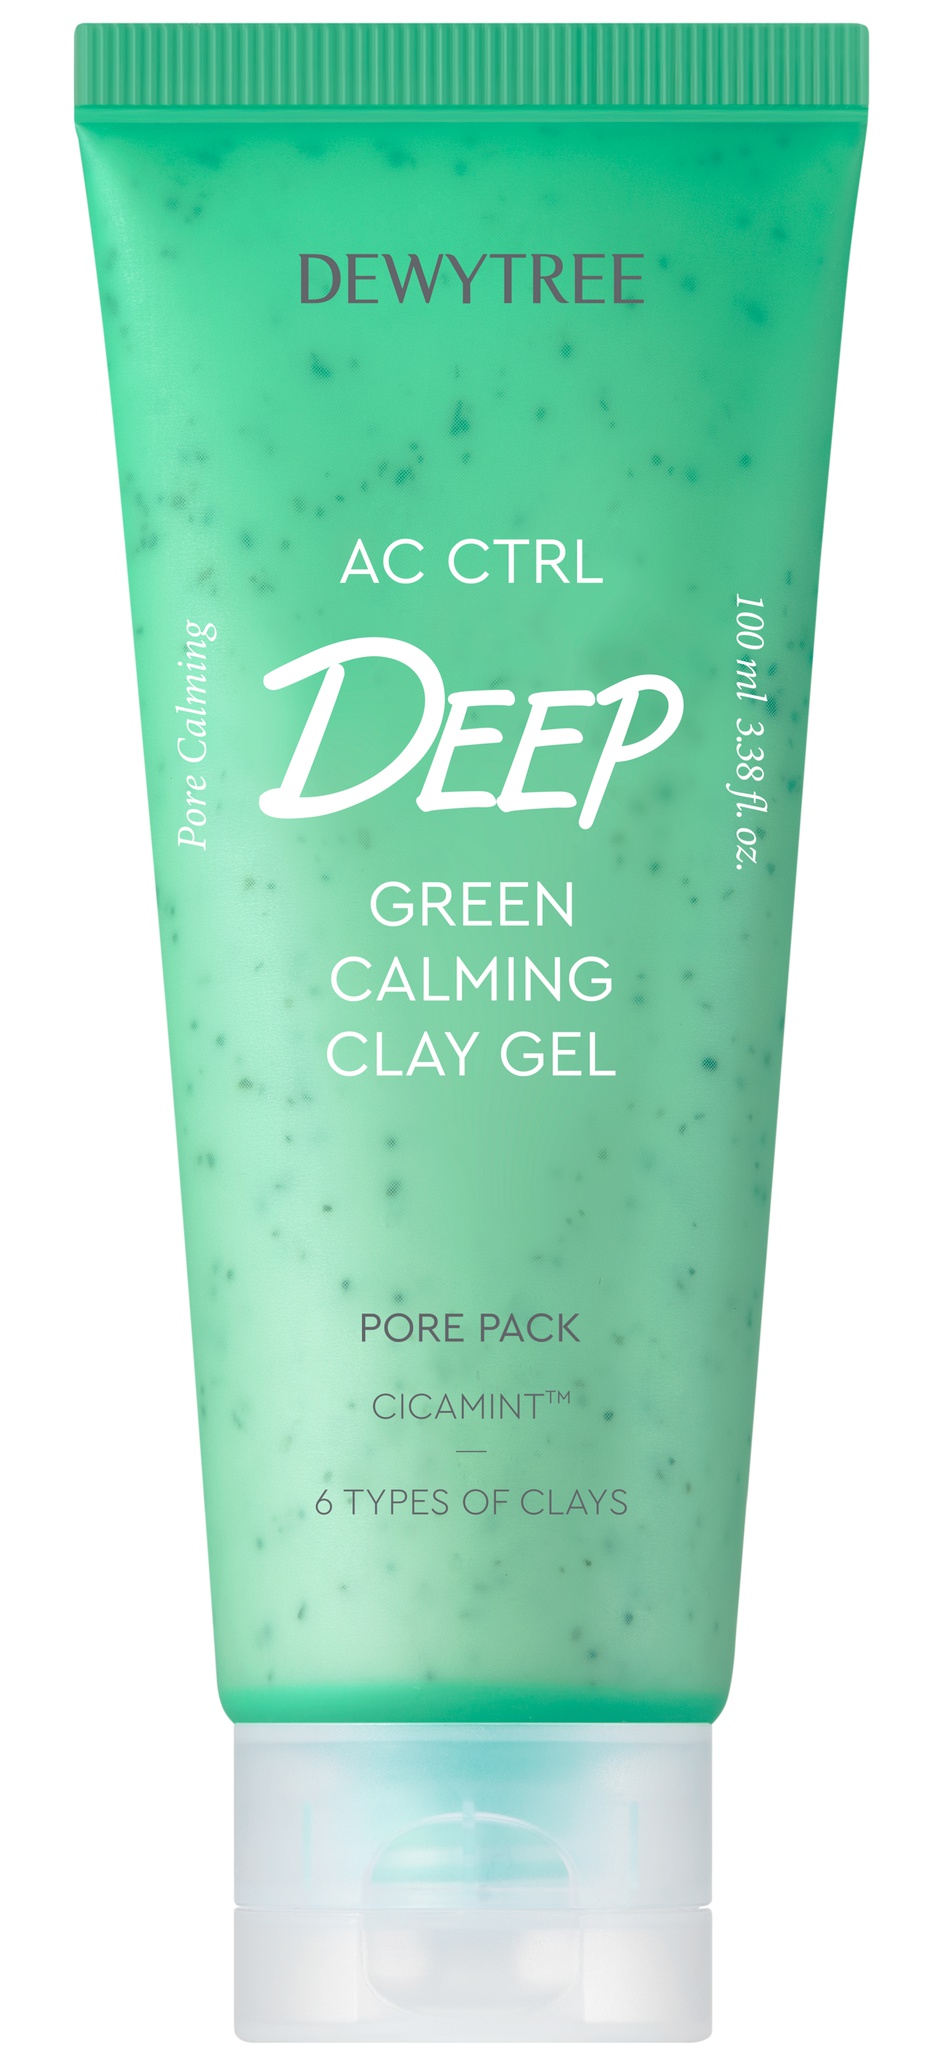 Dewytree Ac Ctrl Deep Green Calming Clay Gel Pore Pack